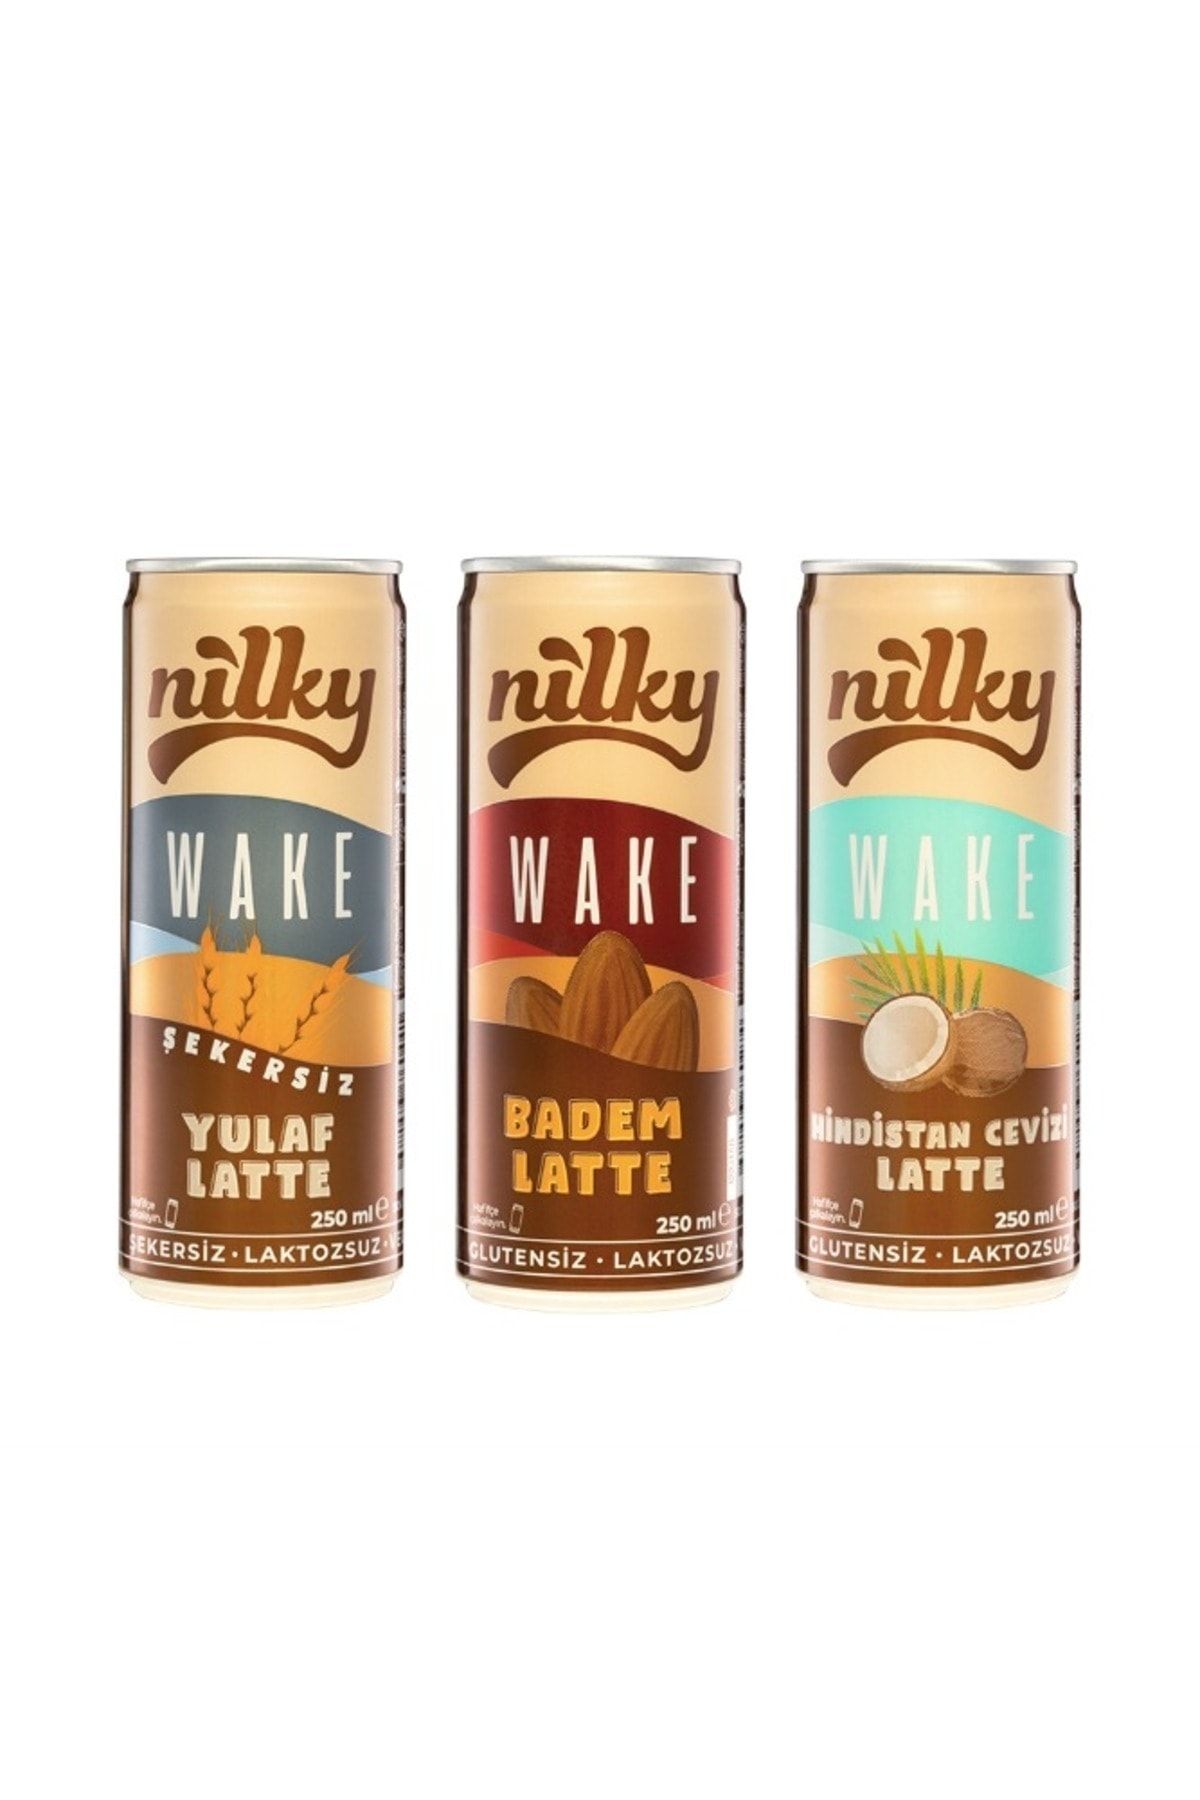 NİLKY Nilky Wake 3'lü Latte ( Almond & Coconut & Yulaf )